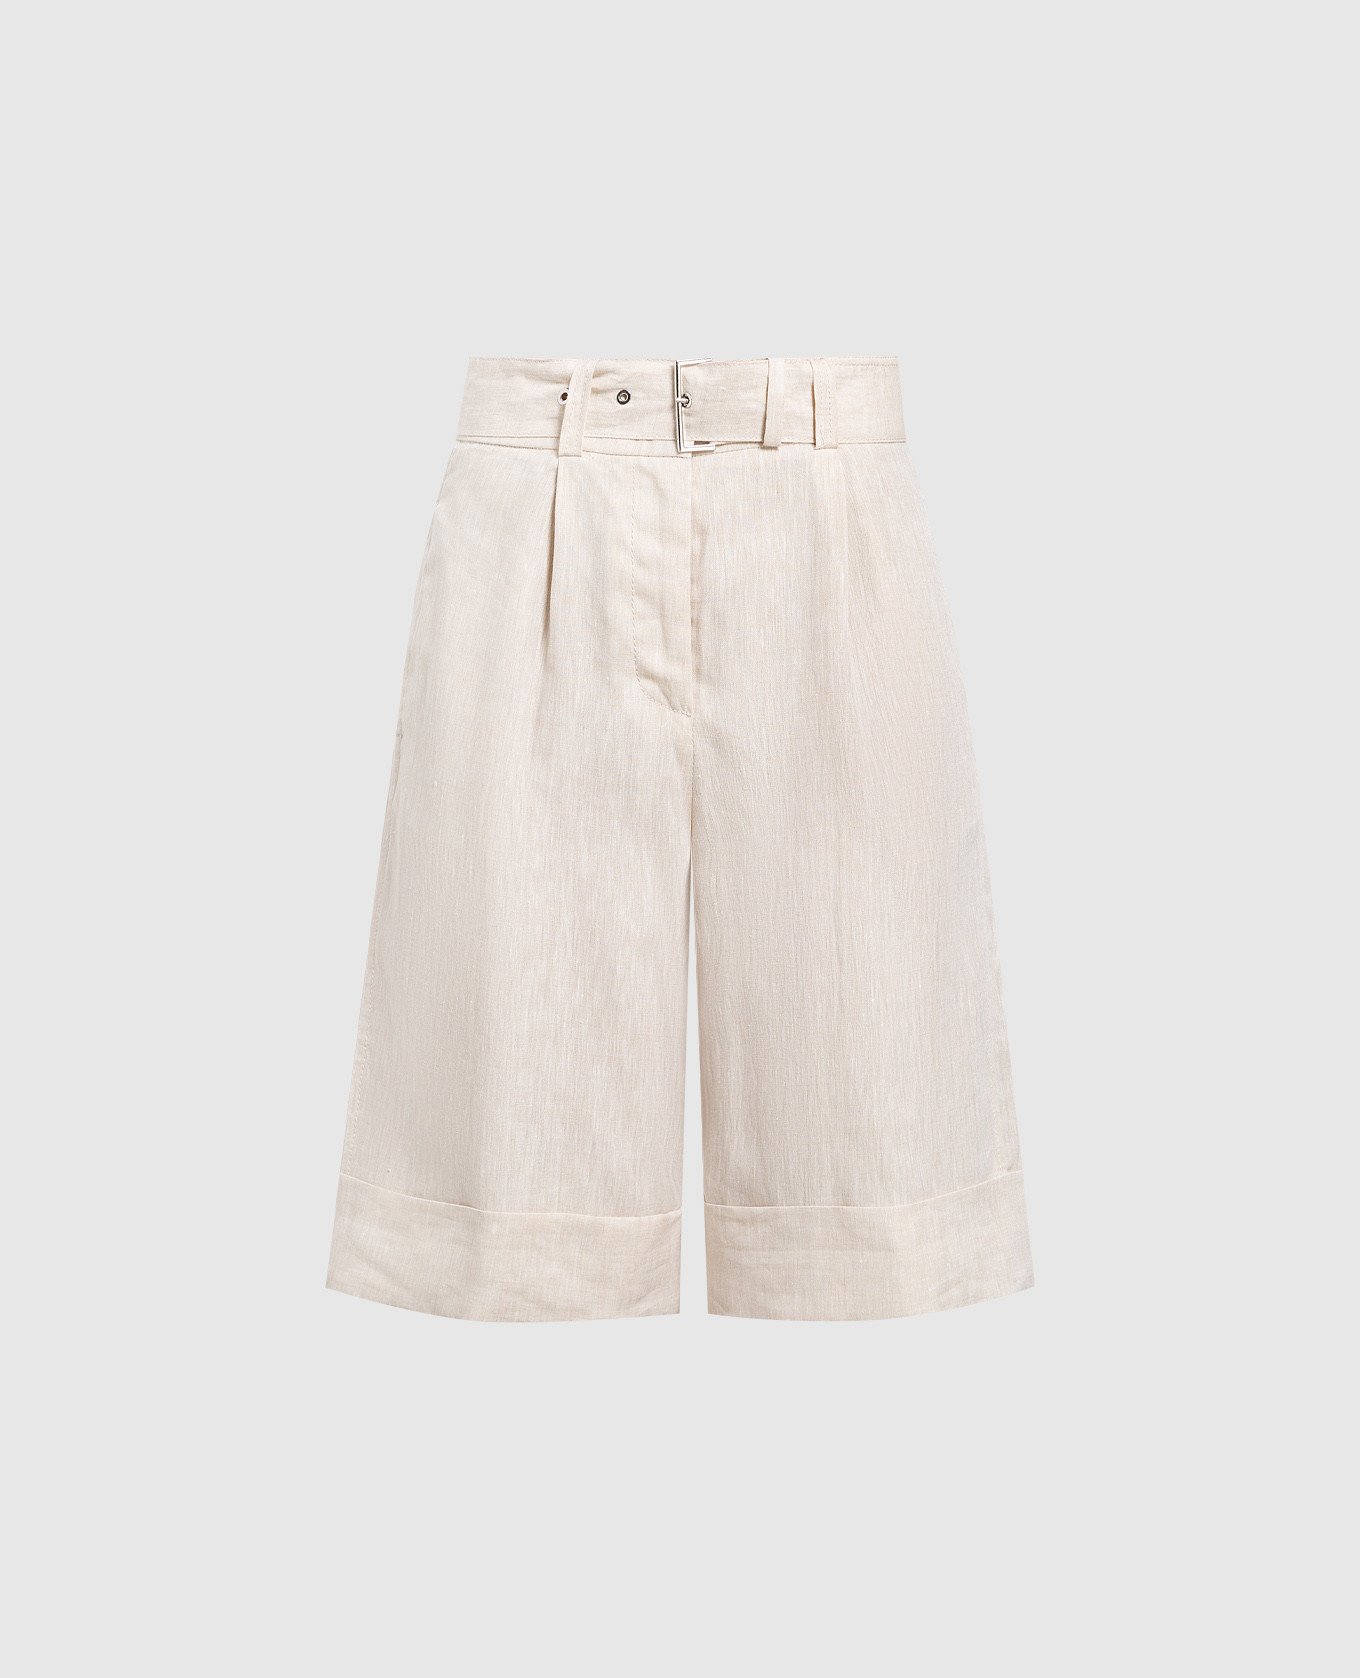 Light beige linen shorts with cuffs